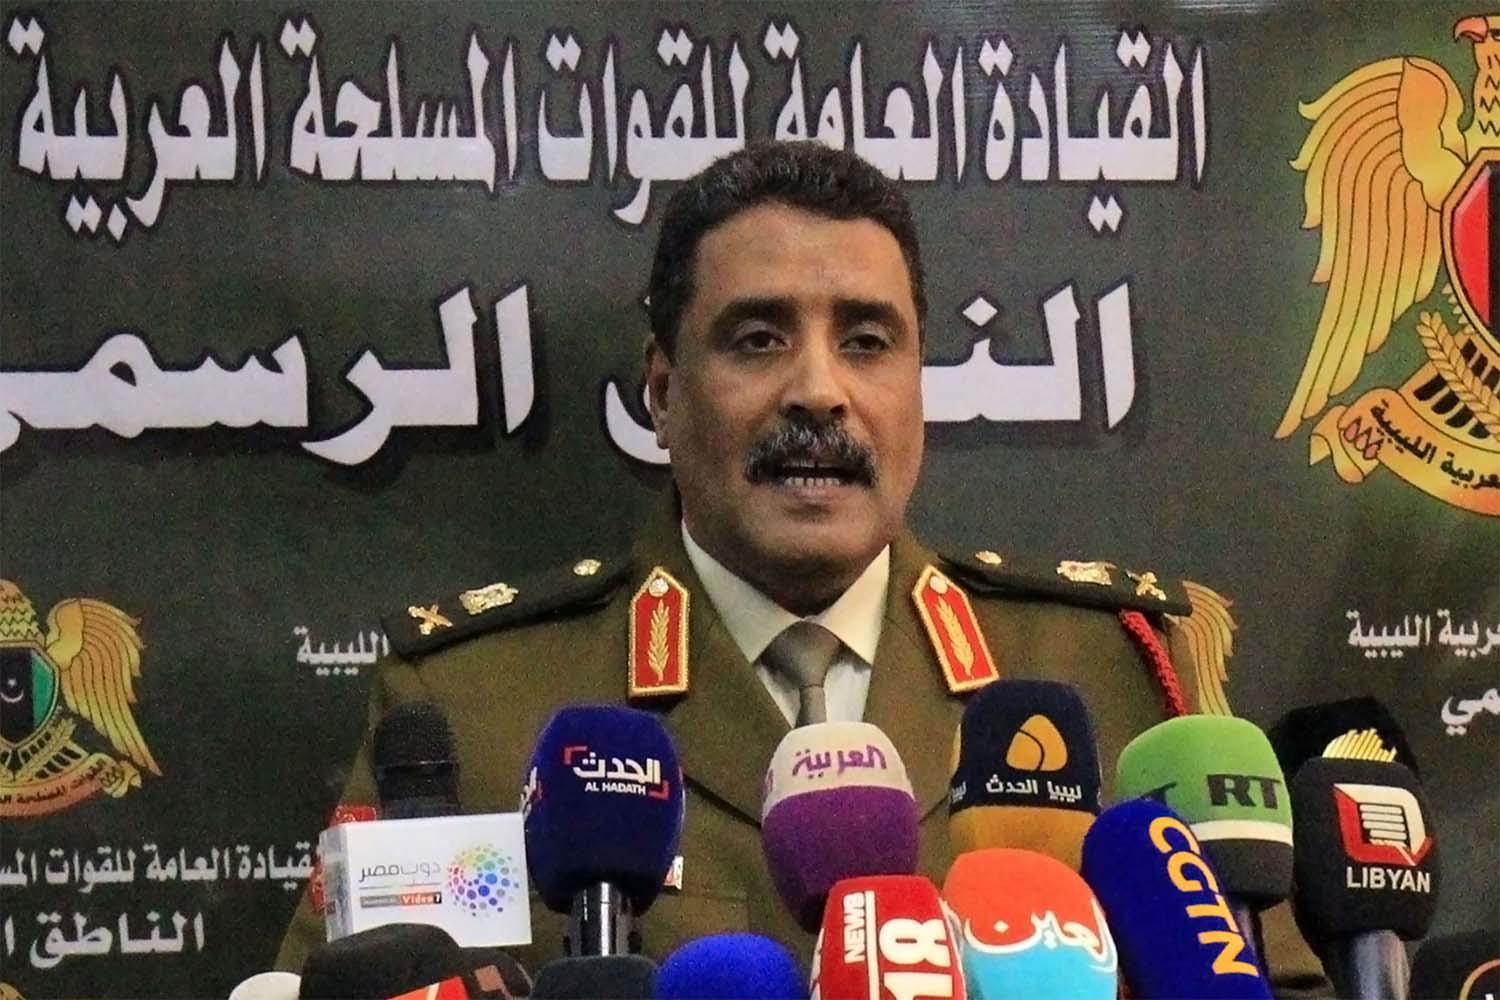 Ahmad al-Mesmari, spokesman for LNA forces